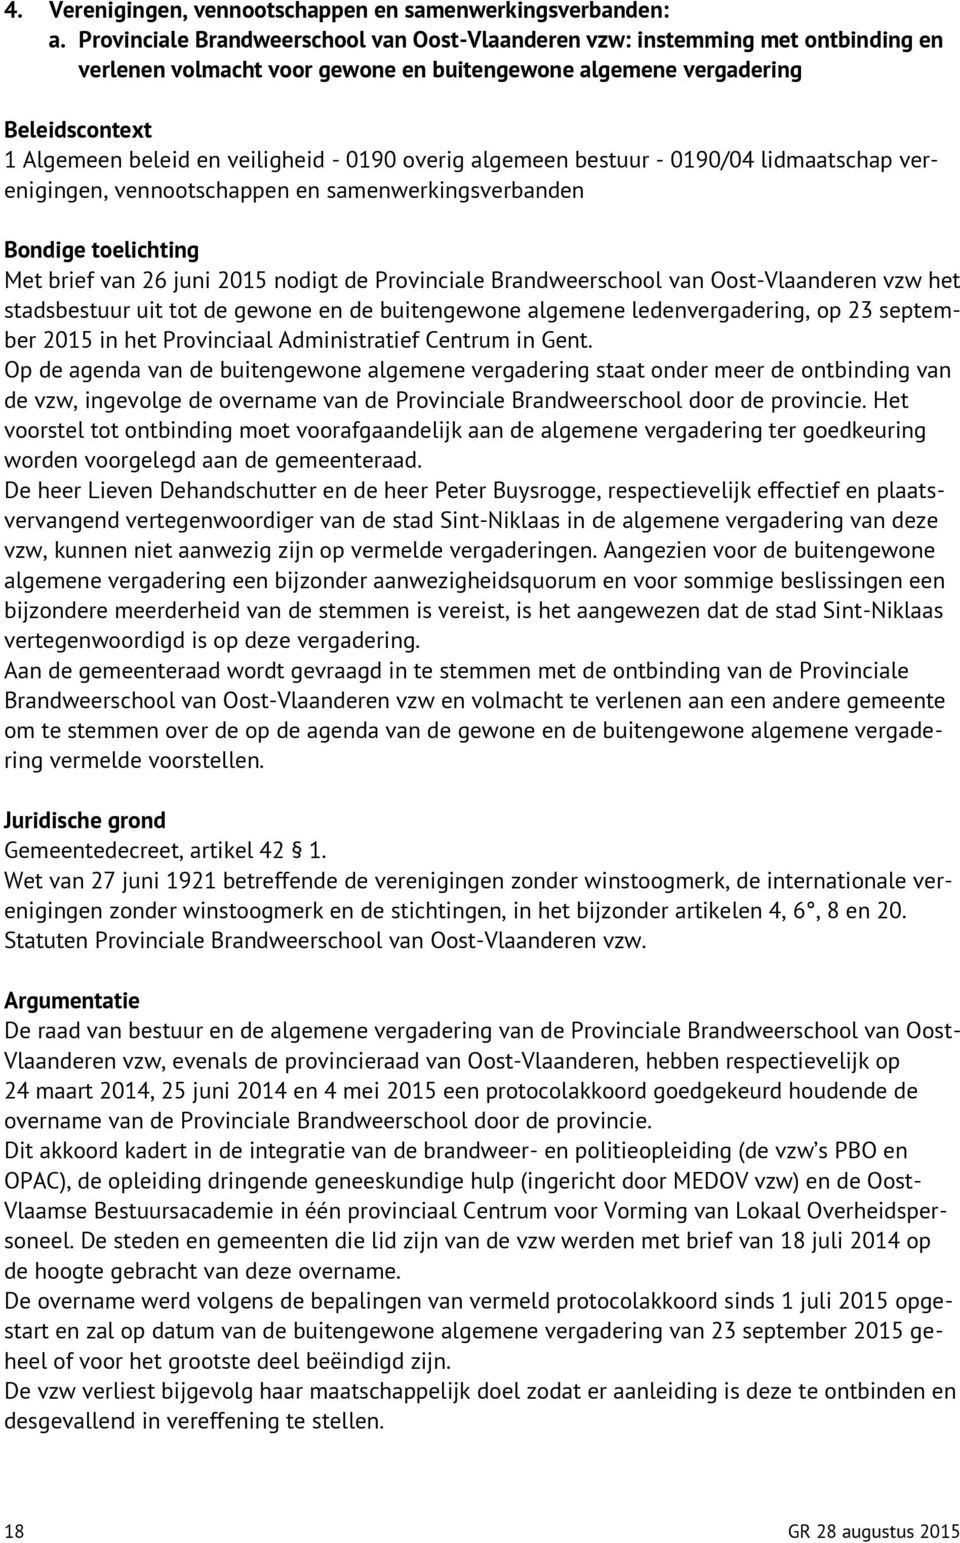 algemeen bestuur - 0190/04 lidmaatschap verenigingen, vennootschappen en samenwerkingsverbanden Met brief van 26 juni 2015 nodigt de Provinciale Brandweerschool van Oost-Vlaanderen vzw het